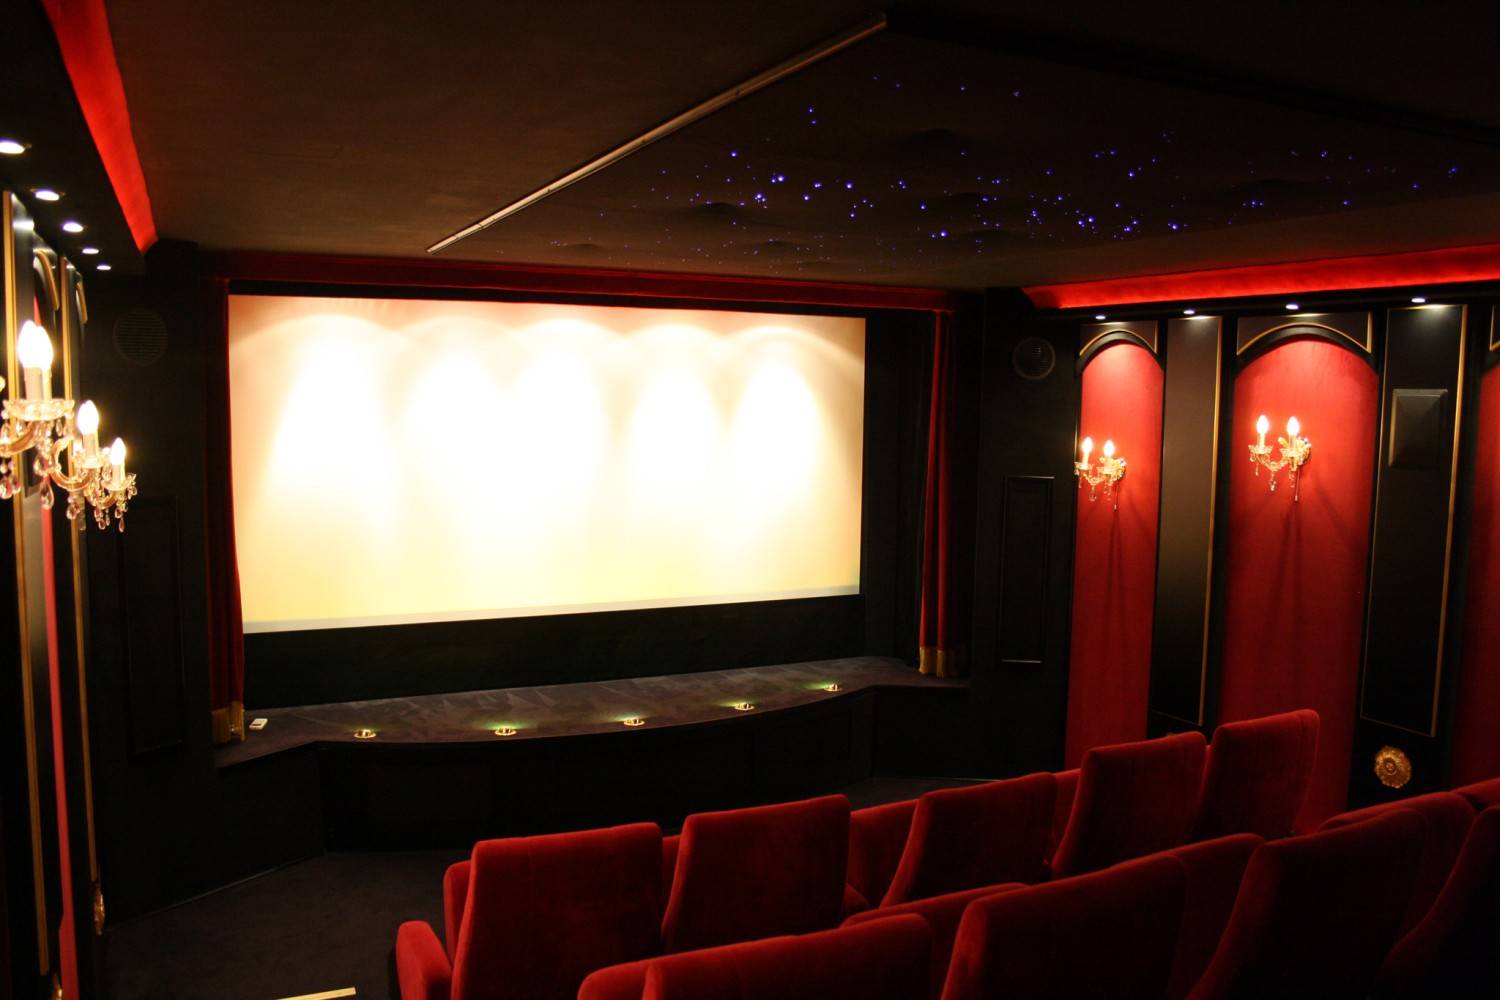 Ratgeber Cine-Lounge: Riesiges 7.1-Kino im Theaterstil - News, Bild 1